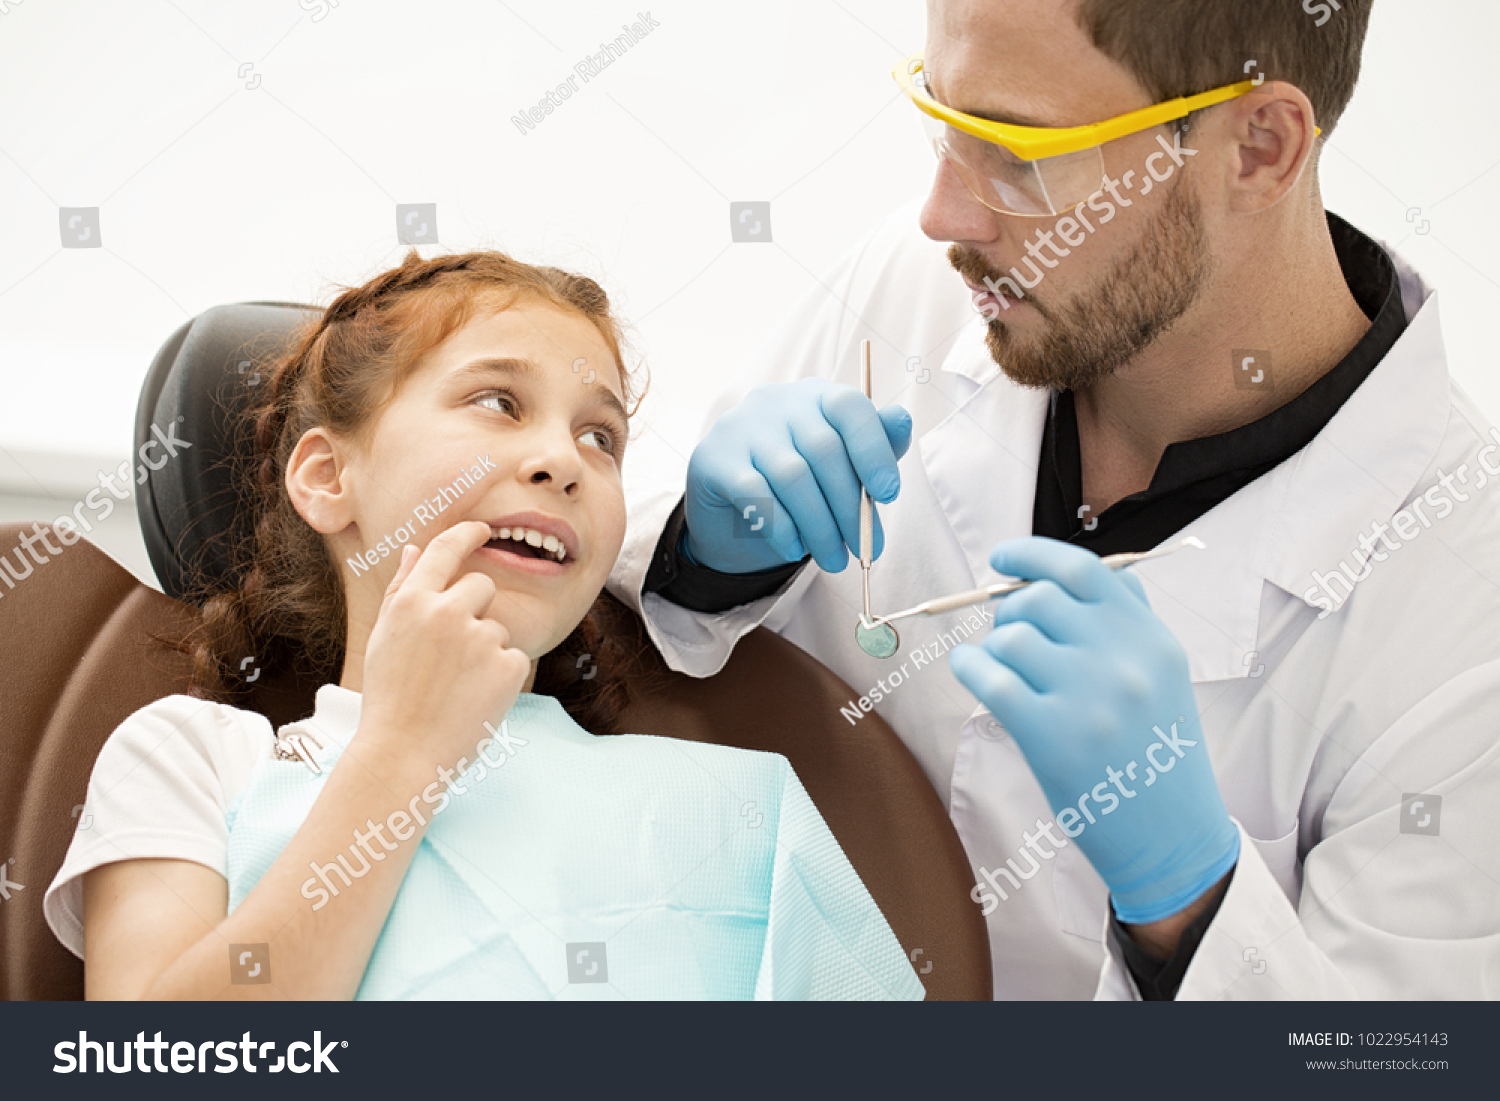 Неприятный четыре. Картинки стоматология красивые. Кастильо дантист. Dental Emergencies. Emergency dentist.